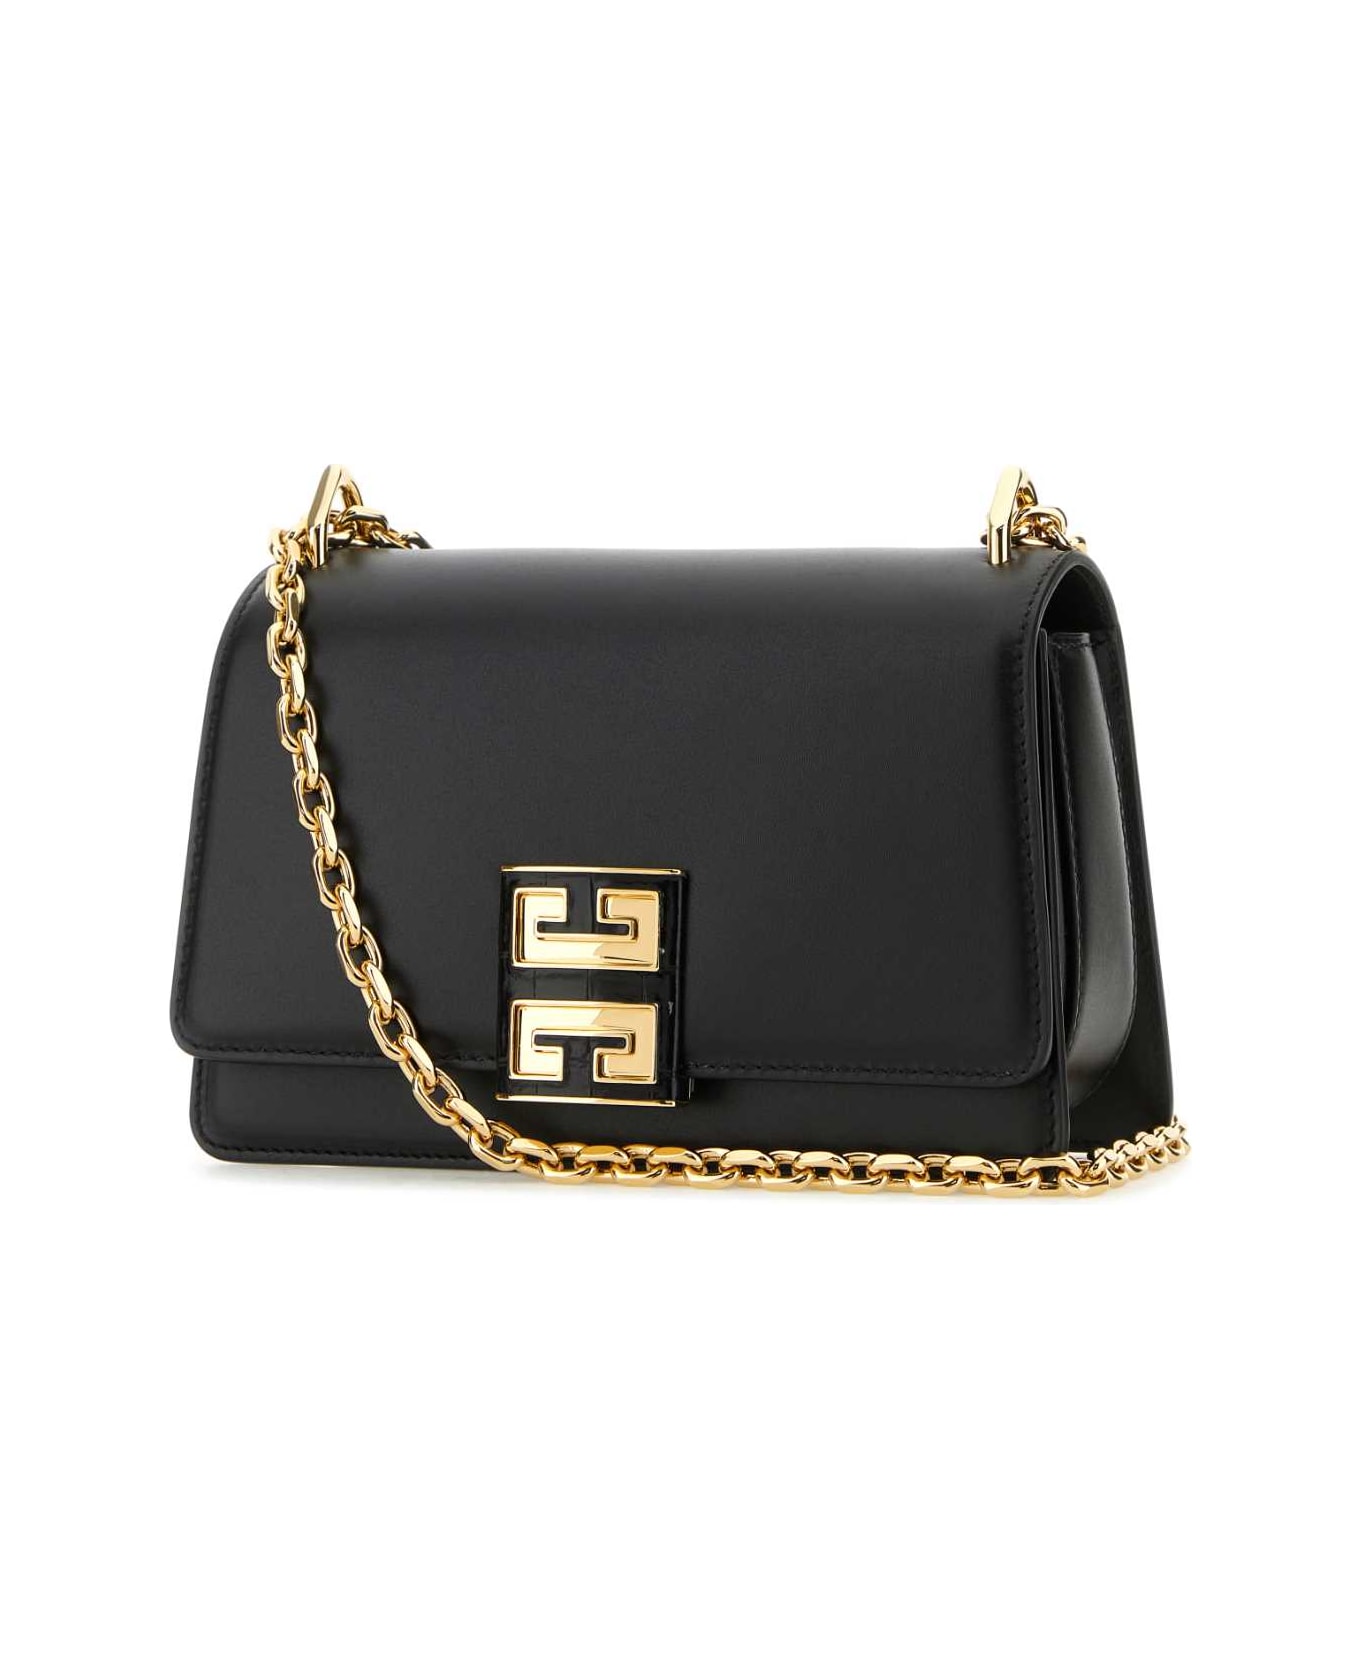 Givenchy Black Leather Small 4g Shoulder Bag - BLACK